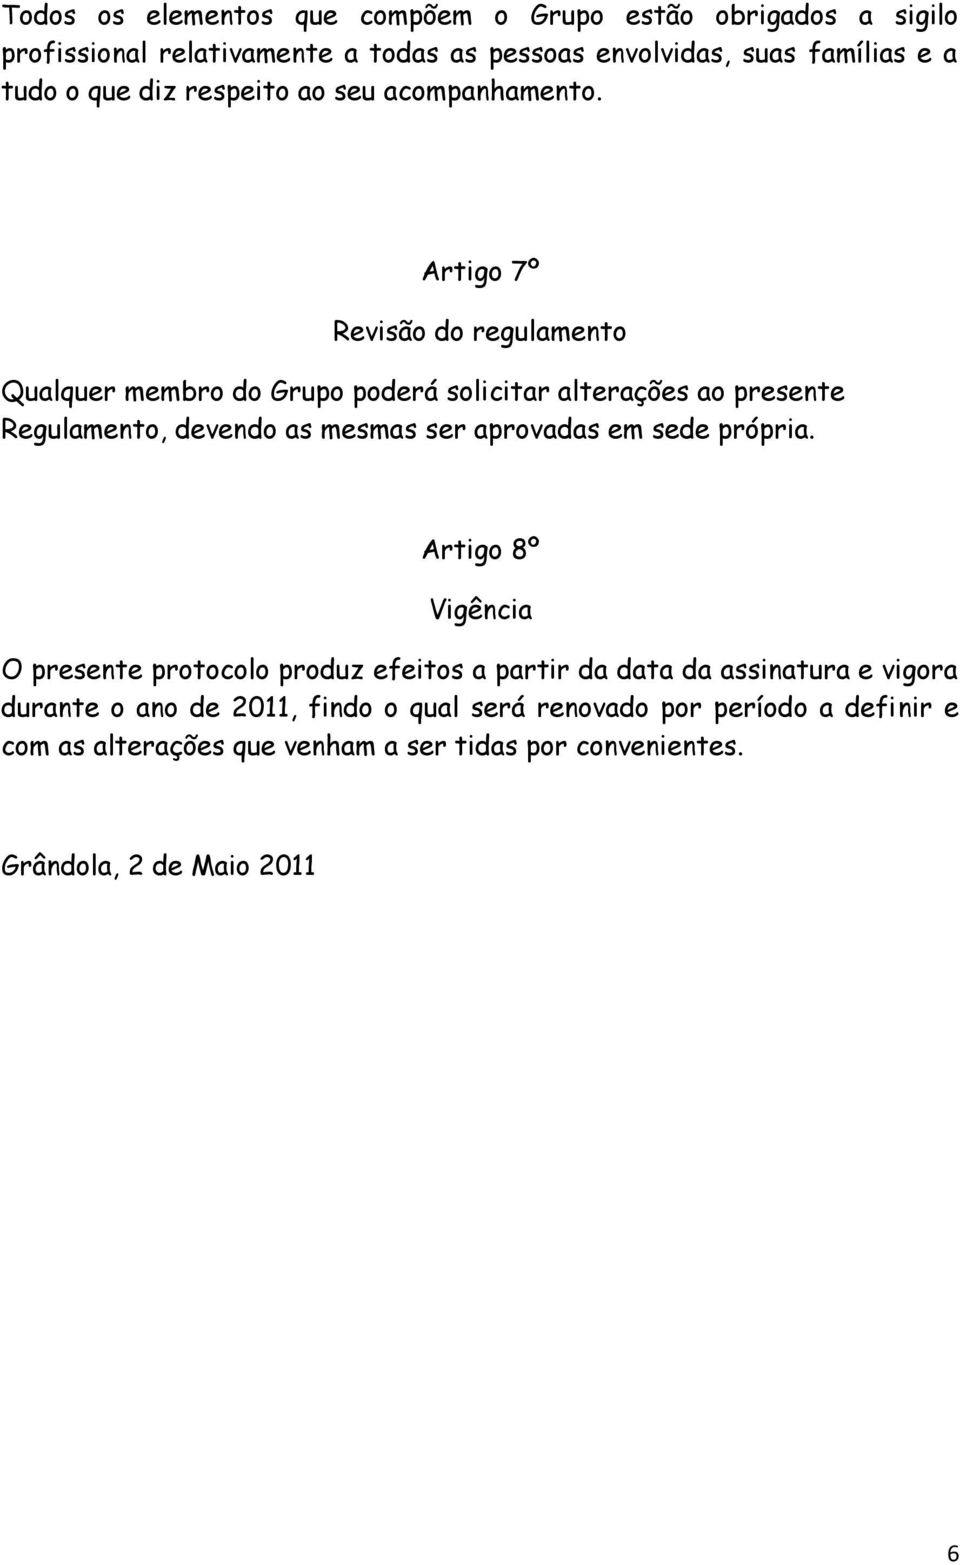 Artigo 7º Revisão do regulamento Qualquer membro do Grupo poderá solicitar alterações ao presente Regulamento, devendo as mesmas ser aprovadas em sede